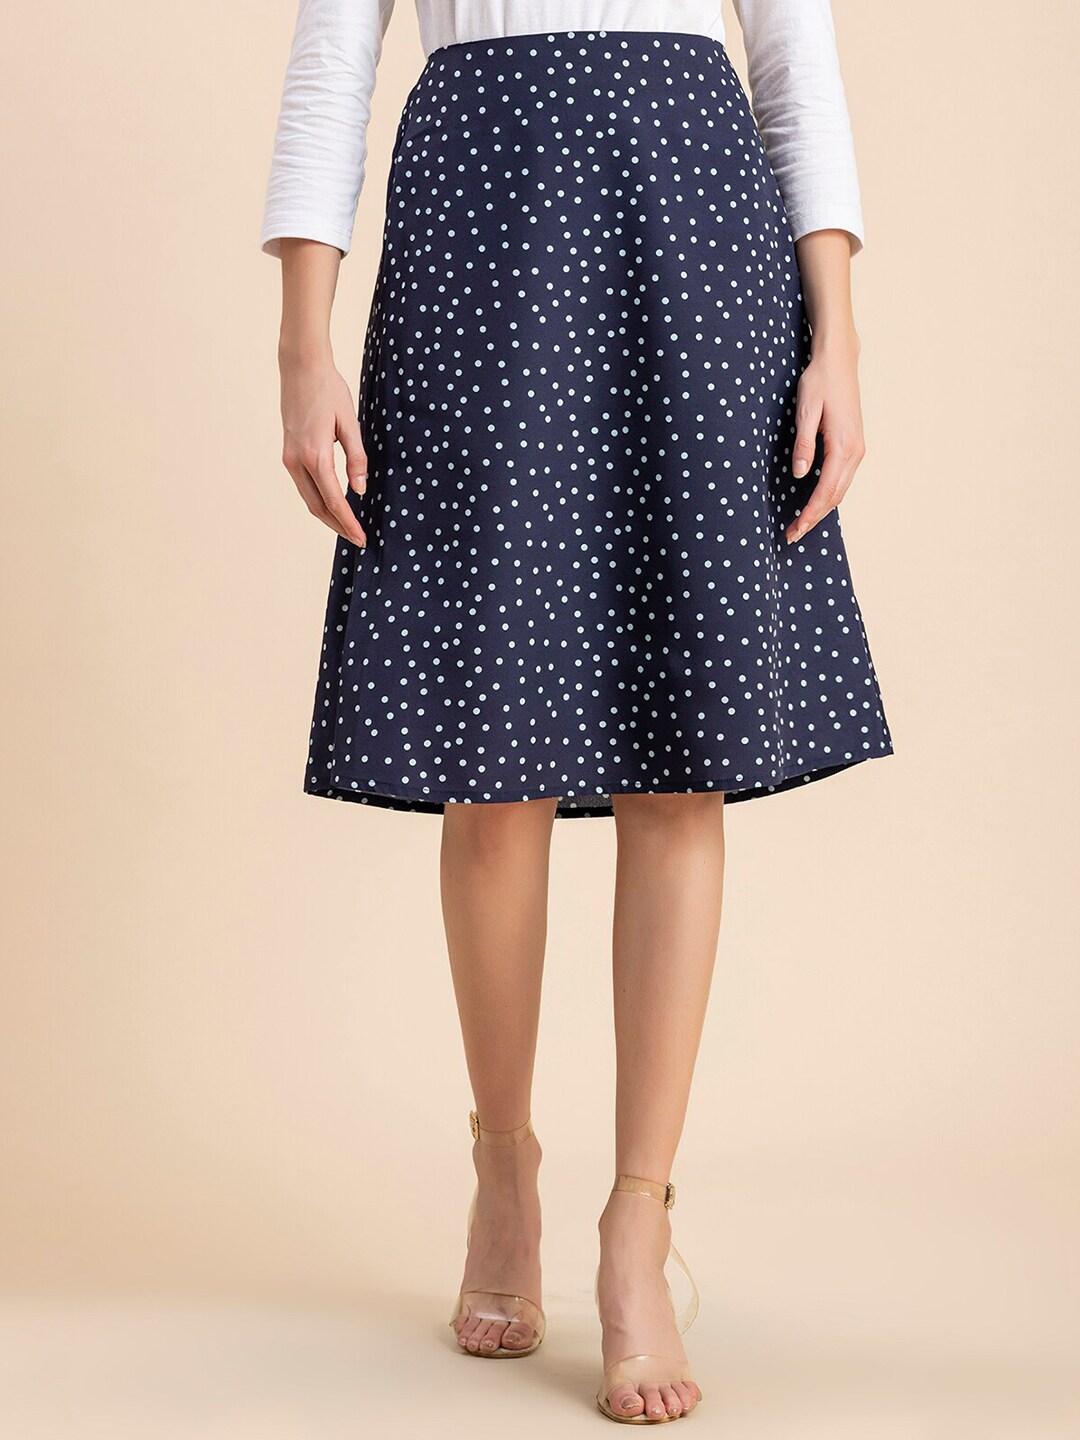 moomaya polka dot printed crepe a-line midi length skirt